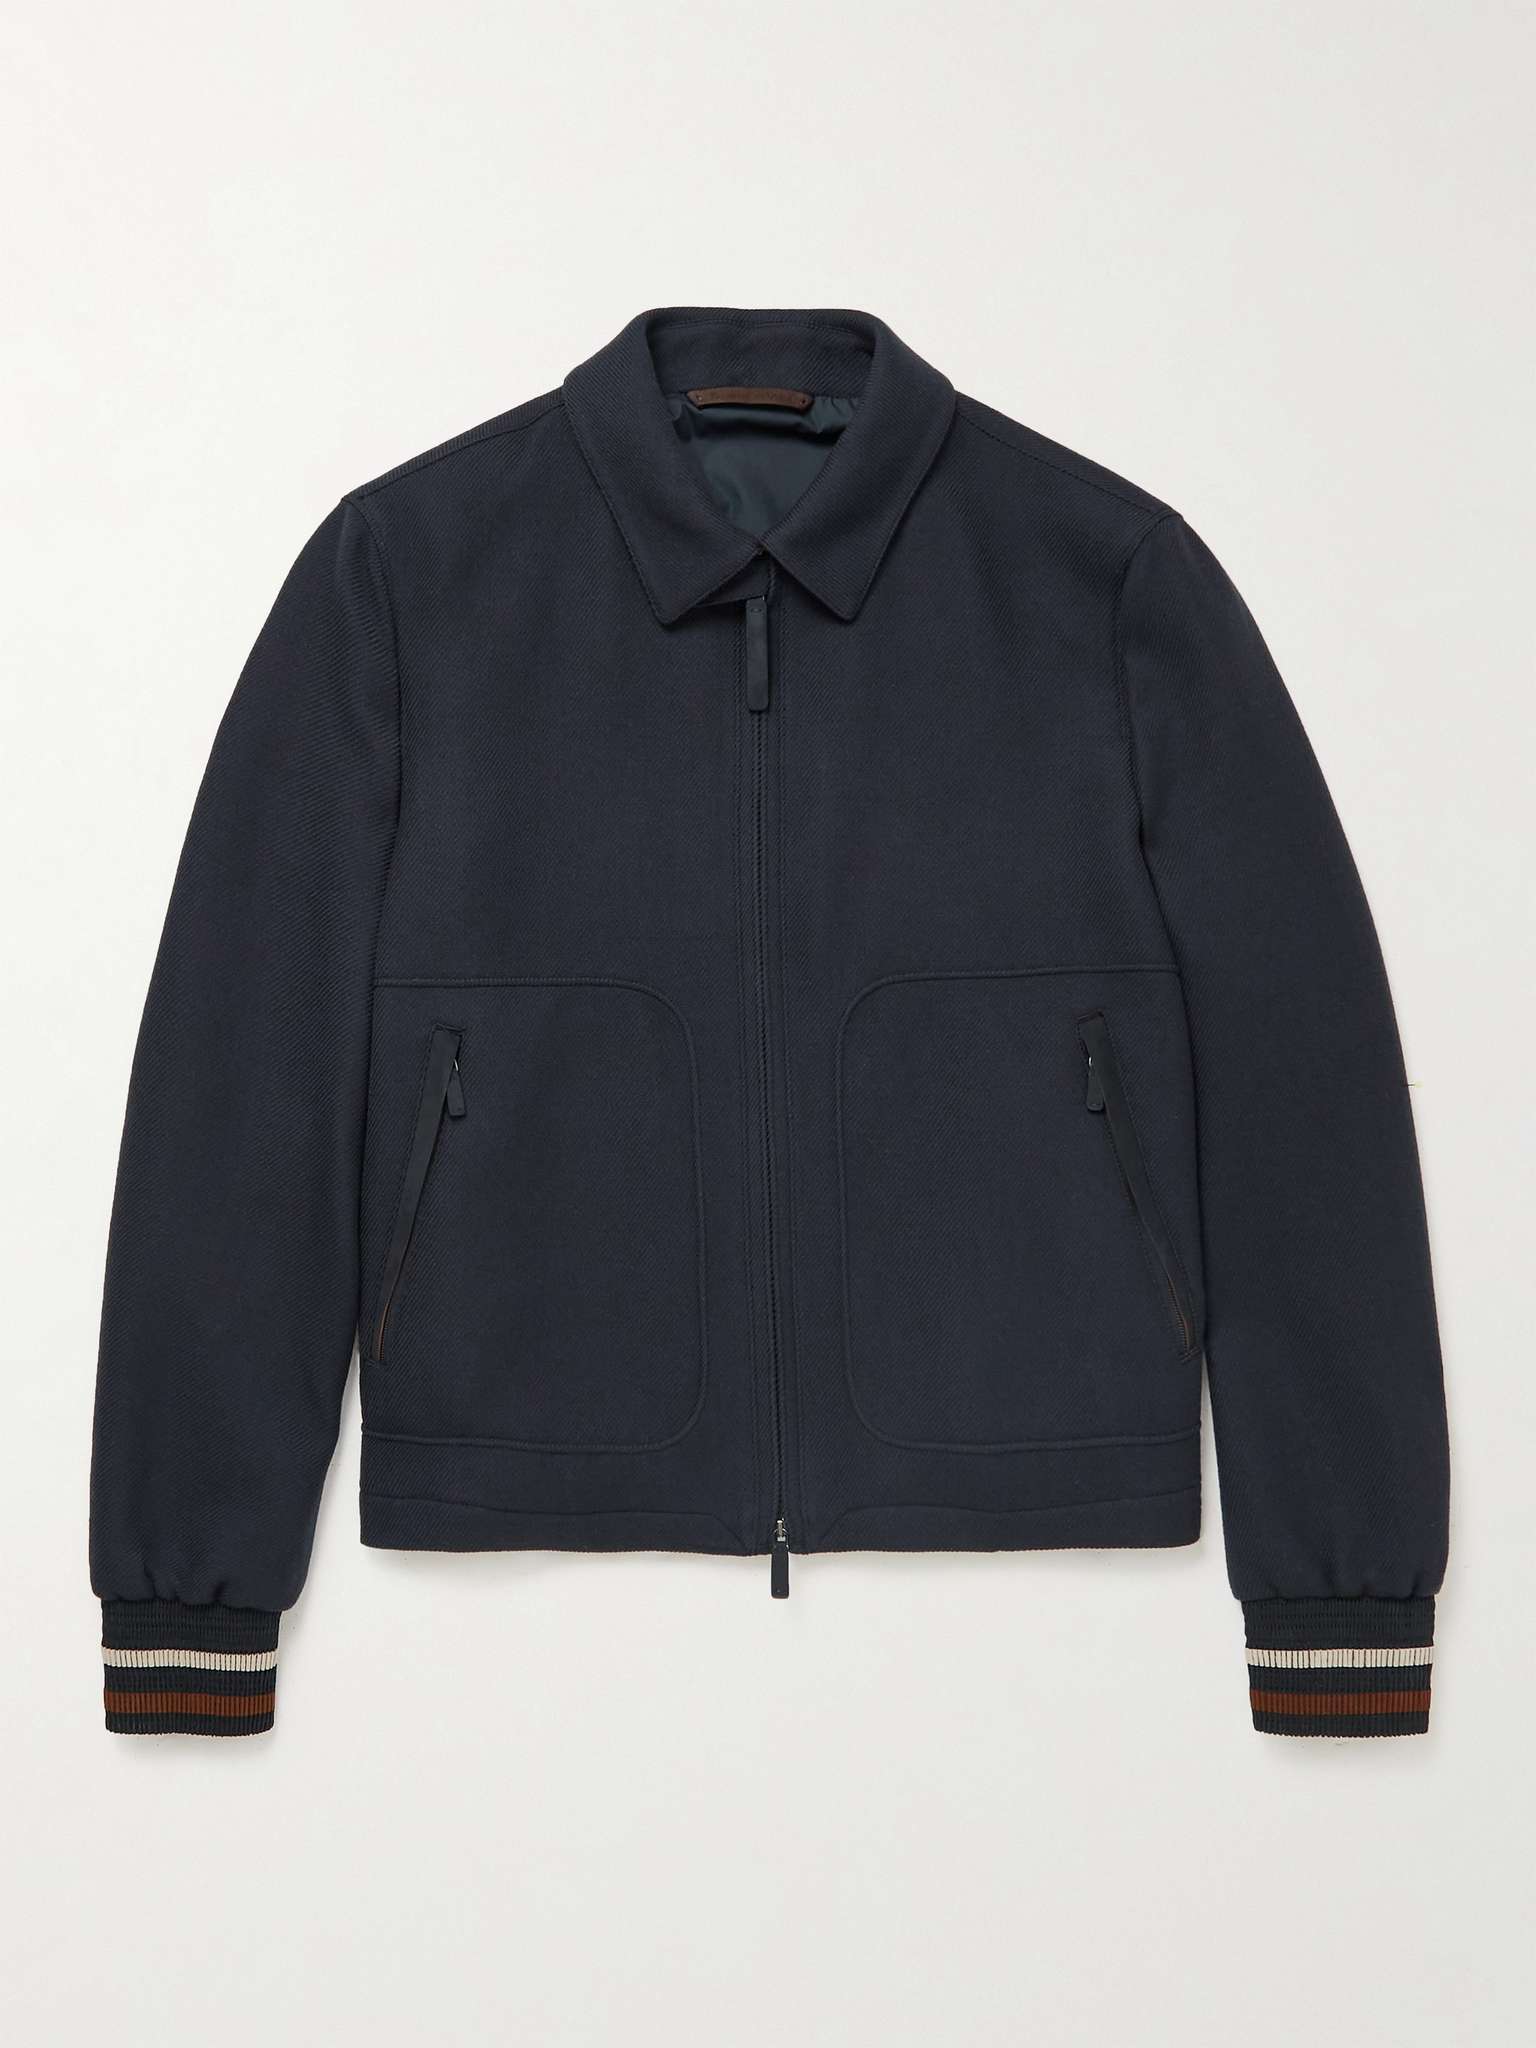 ZEGNA Slim-Fit Leather-Trimmed Achillfarm Wool Jacket for Men | MR PORTER